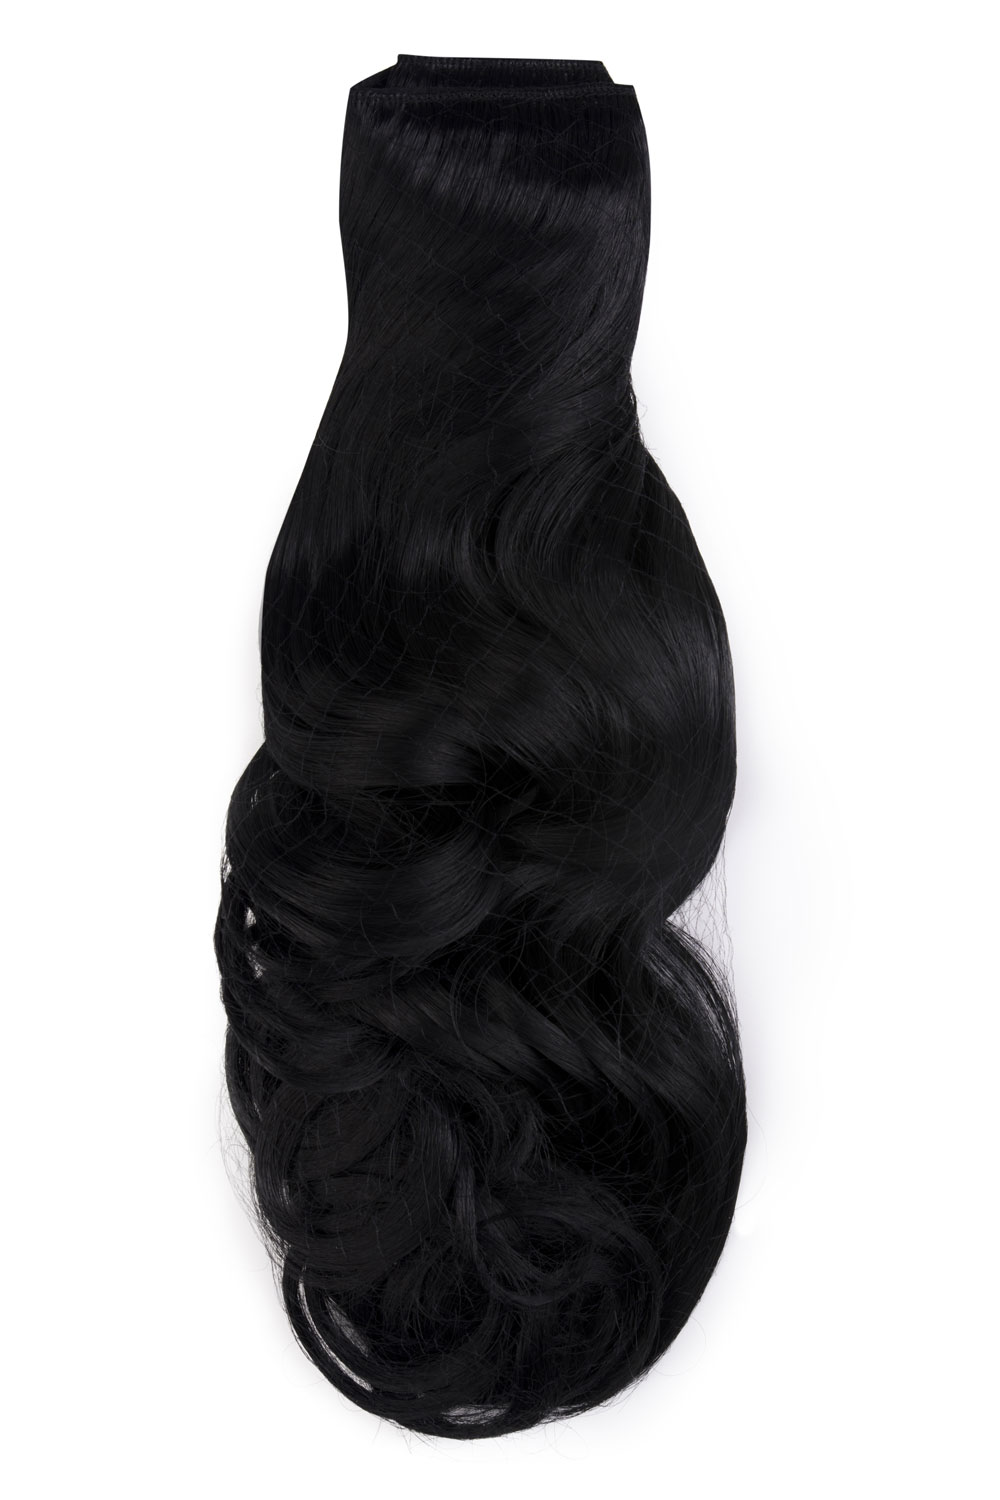 Čierne jednopásové vlasy, vlnité, 50cm, 115g, farba 1